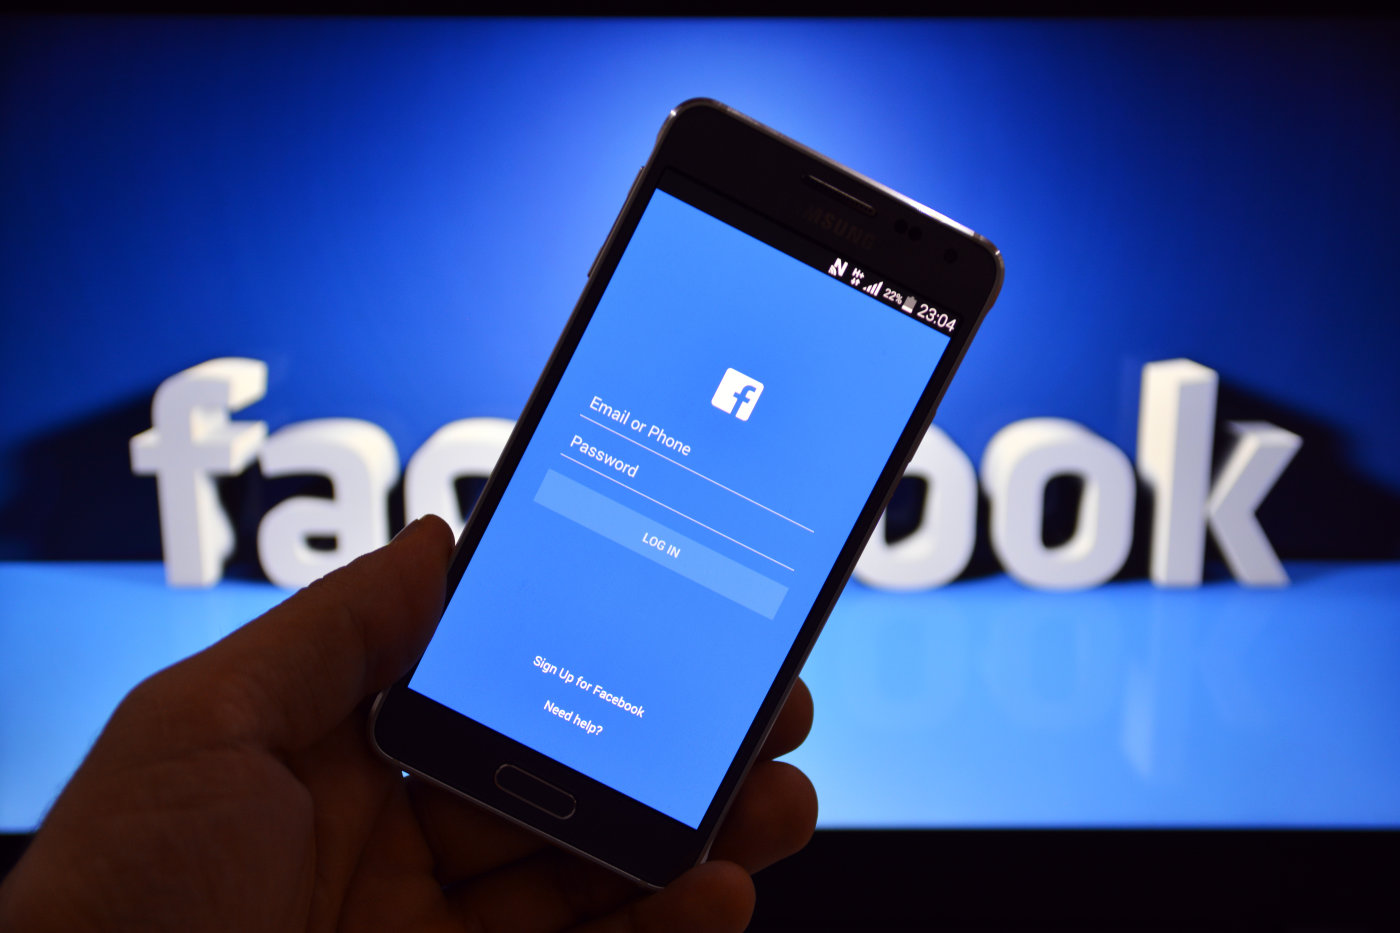 VIA Facebook là gì? Phân biệt Clone Facebook và VIA Facebook? - Ý Tưởng Kinh Doanh | Kiến Thức Kiếm Tiền Online